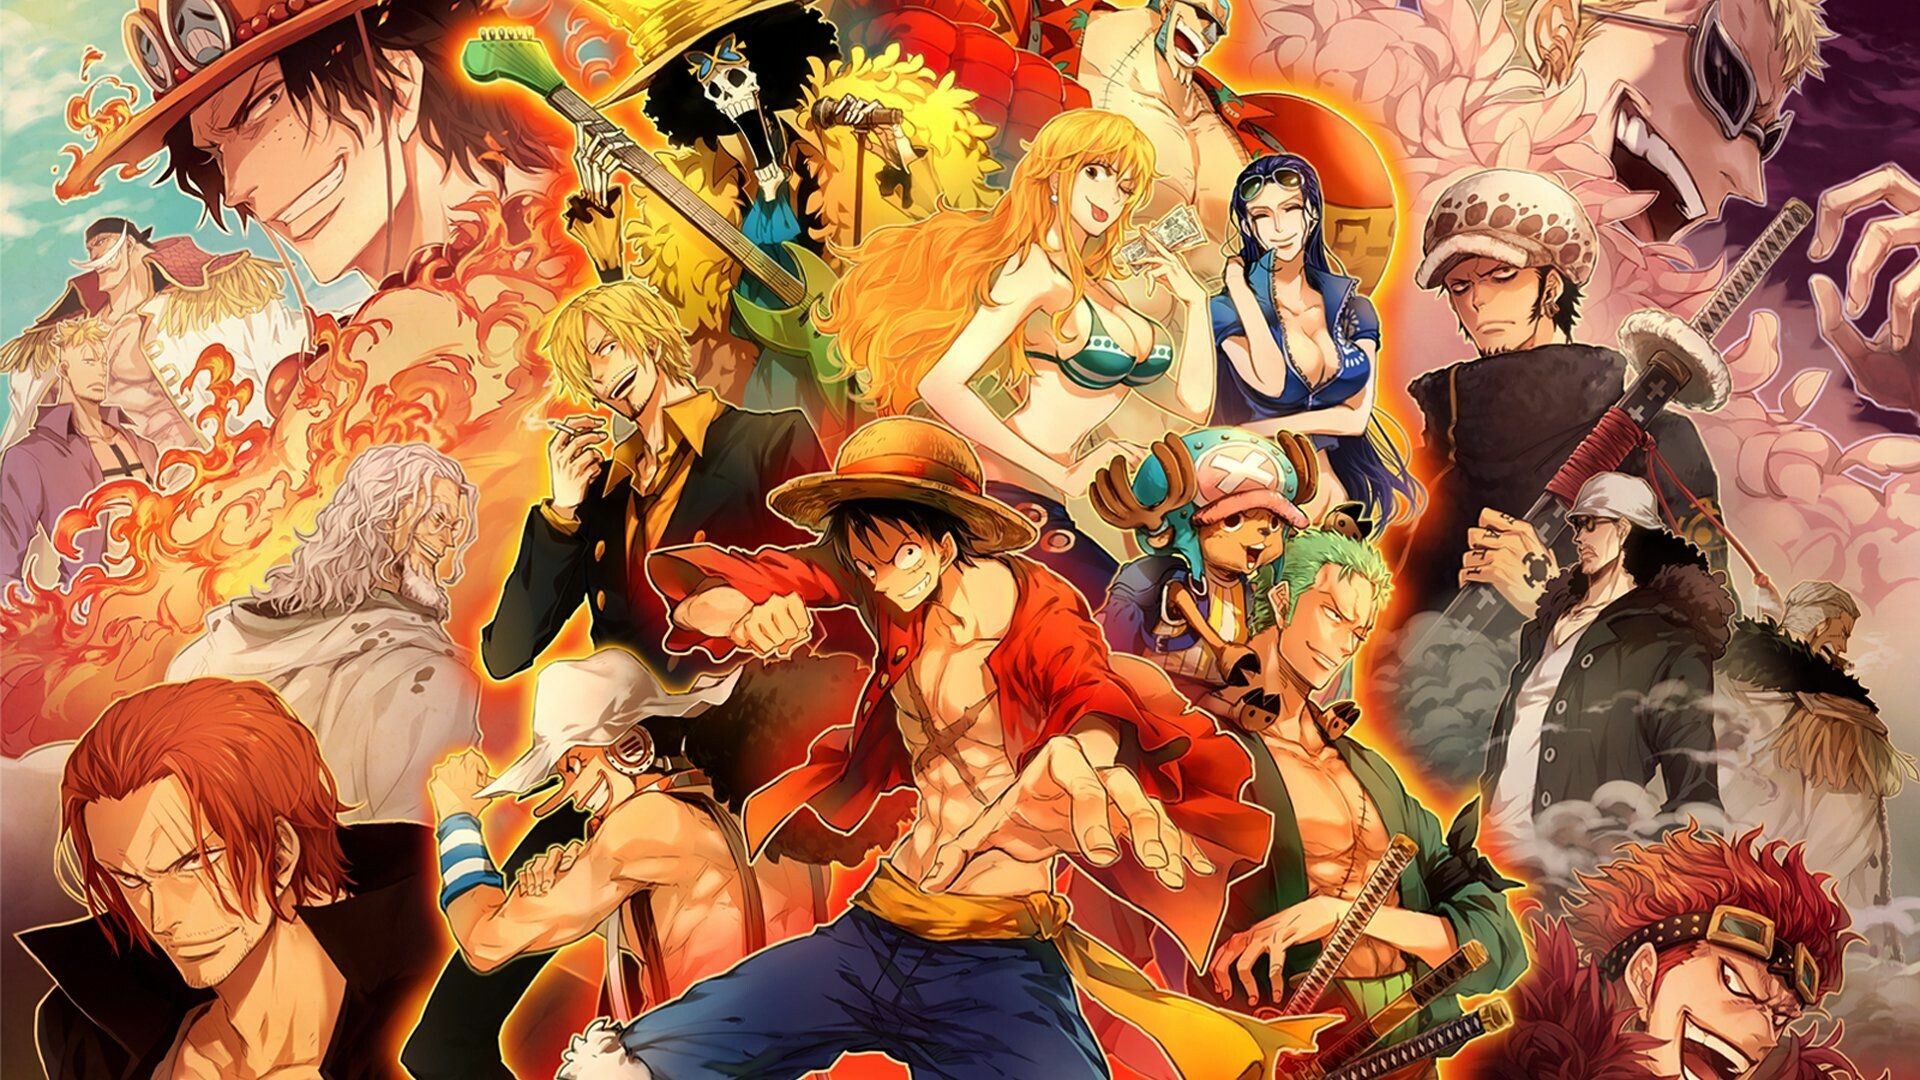 One Piece nền 8k: Bạn là một Fan của bộ truyện tranh One Piece? Vậy đừng bỏ qua hình ảnh One Piece nền 8k tuyệt đẹp của chúng tôi. Với độ phân giải cao và màu sắc sống động, bạn sẽ được chìm đắm trong thế giới tuyệt vời của Luffy và các bạn của mình.